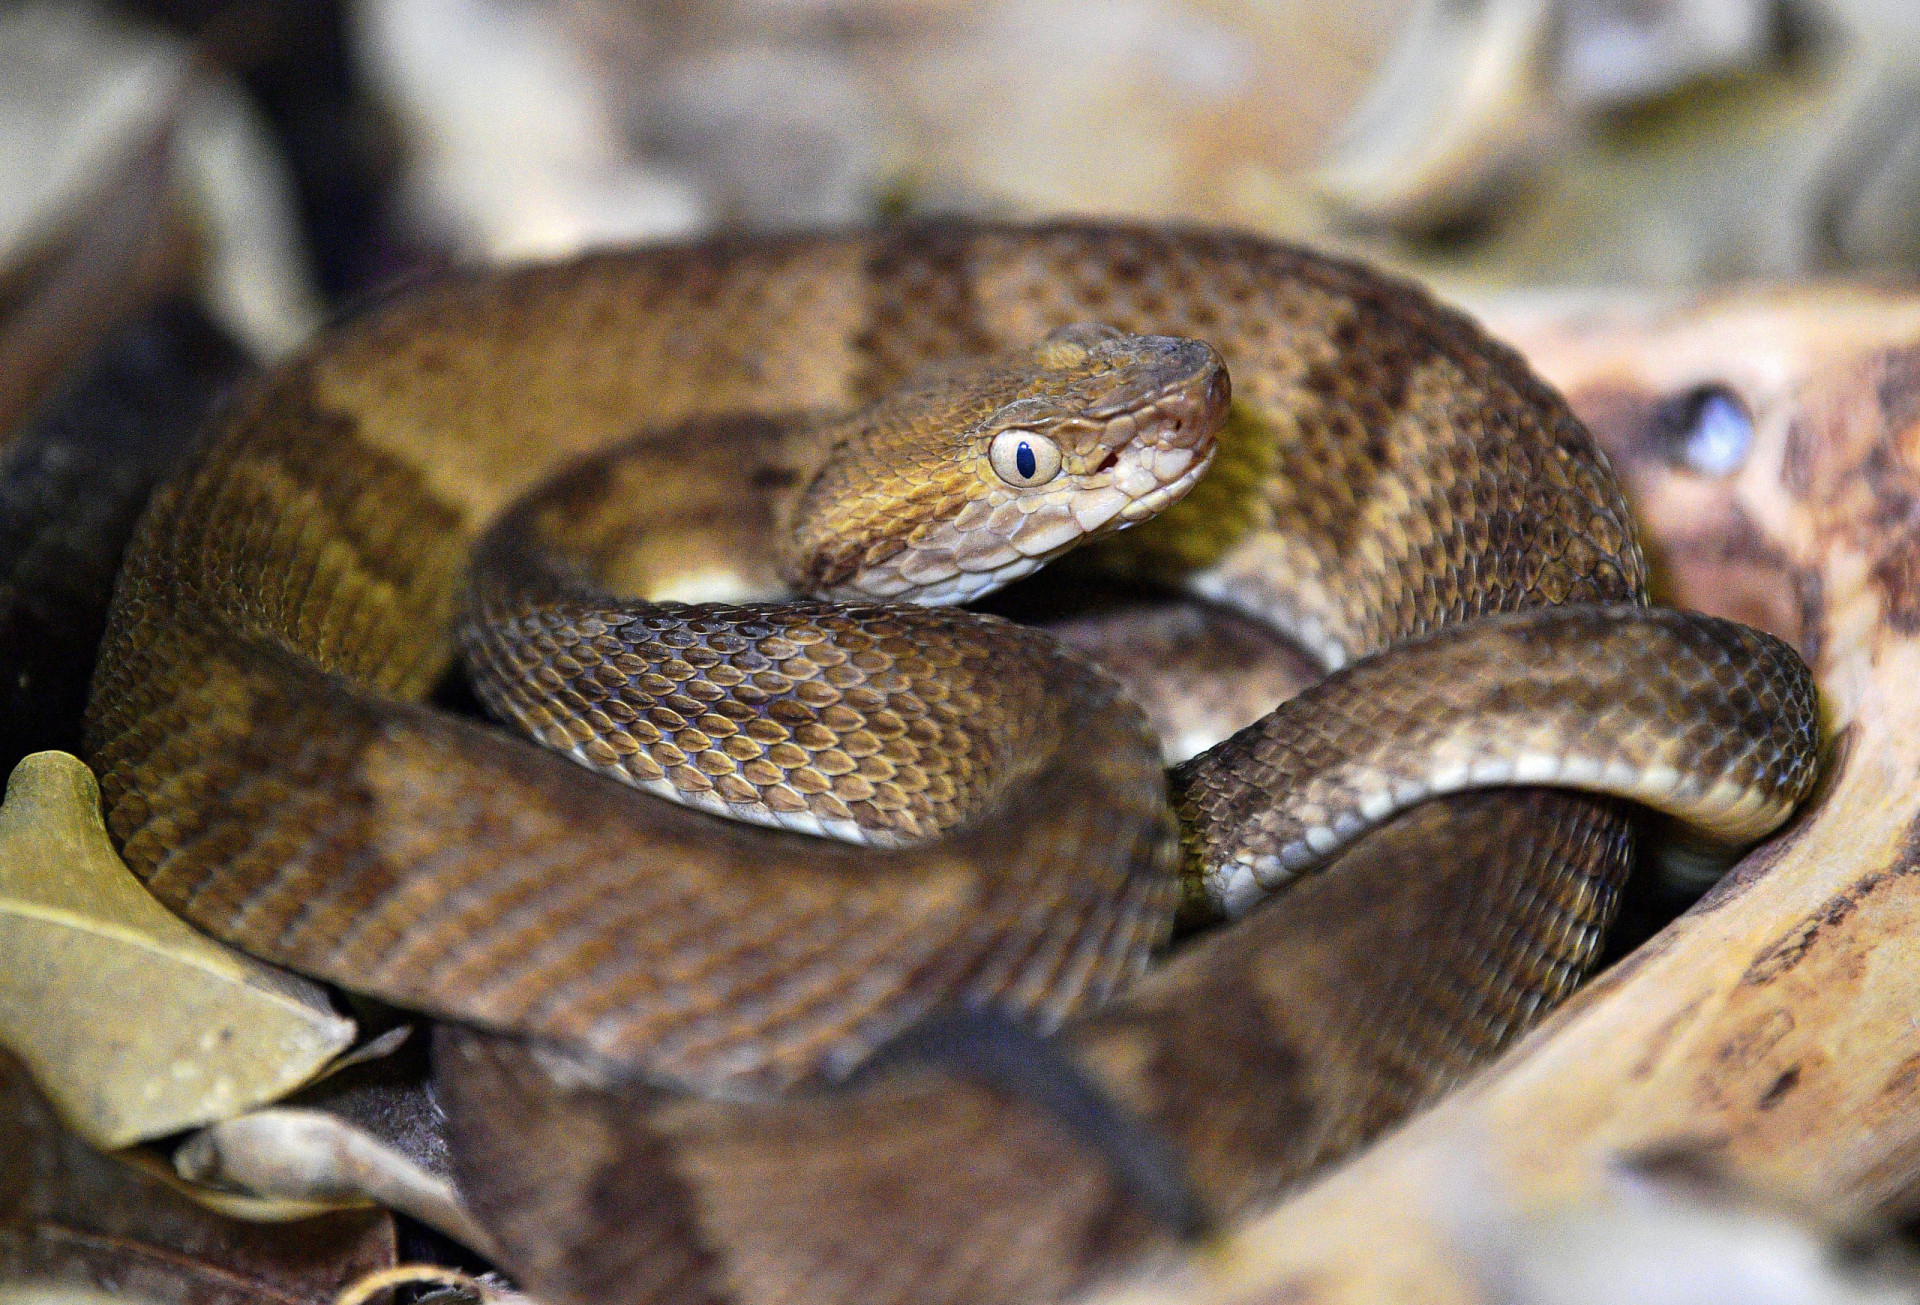 <p>Más conocido como la Isla de las Cobras, este territorio es el hogar de una especie rara y letal de serpiente conocida como serpiente cabeza de lanza dorada. Debido a su peligrosidad, el gobierno de Brasil decidió prohibir la entrada a los turistas. Solo se permite el acceso a investigadores cualificados acompañados de un médico.</p>